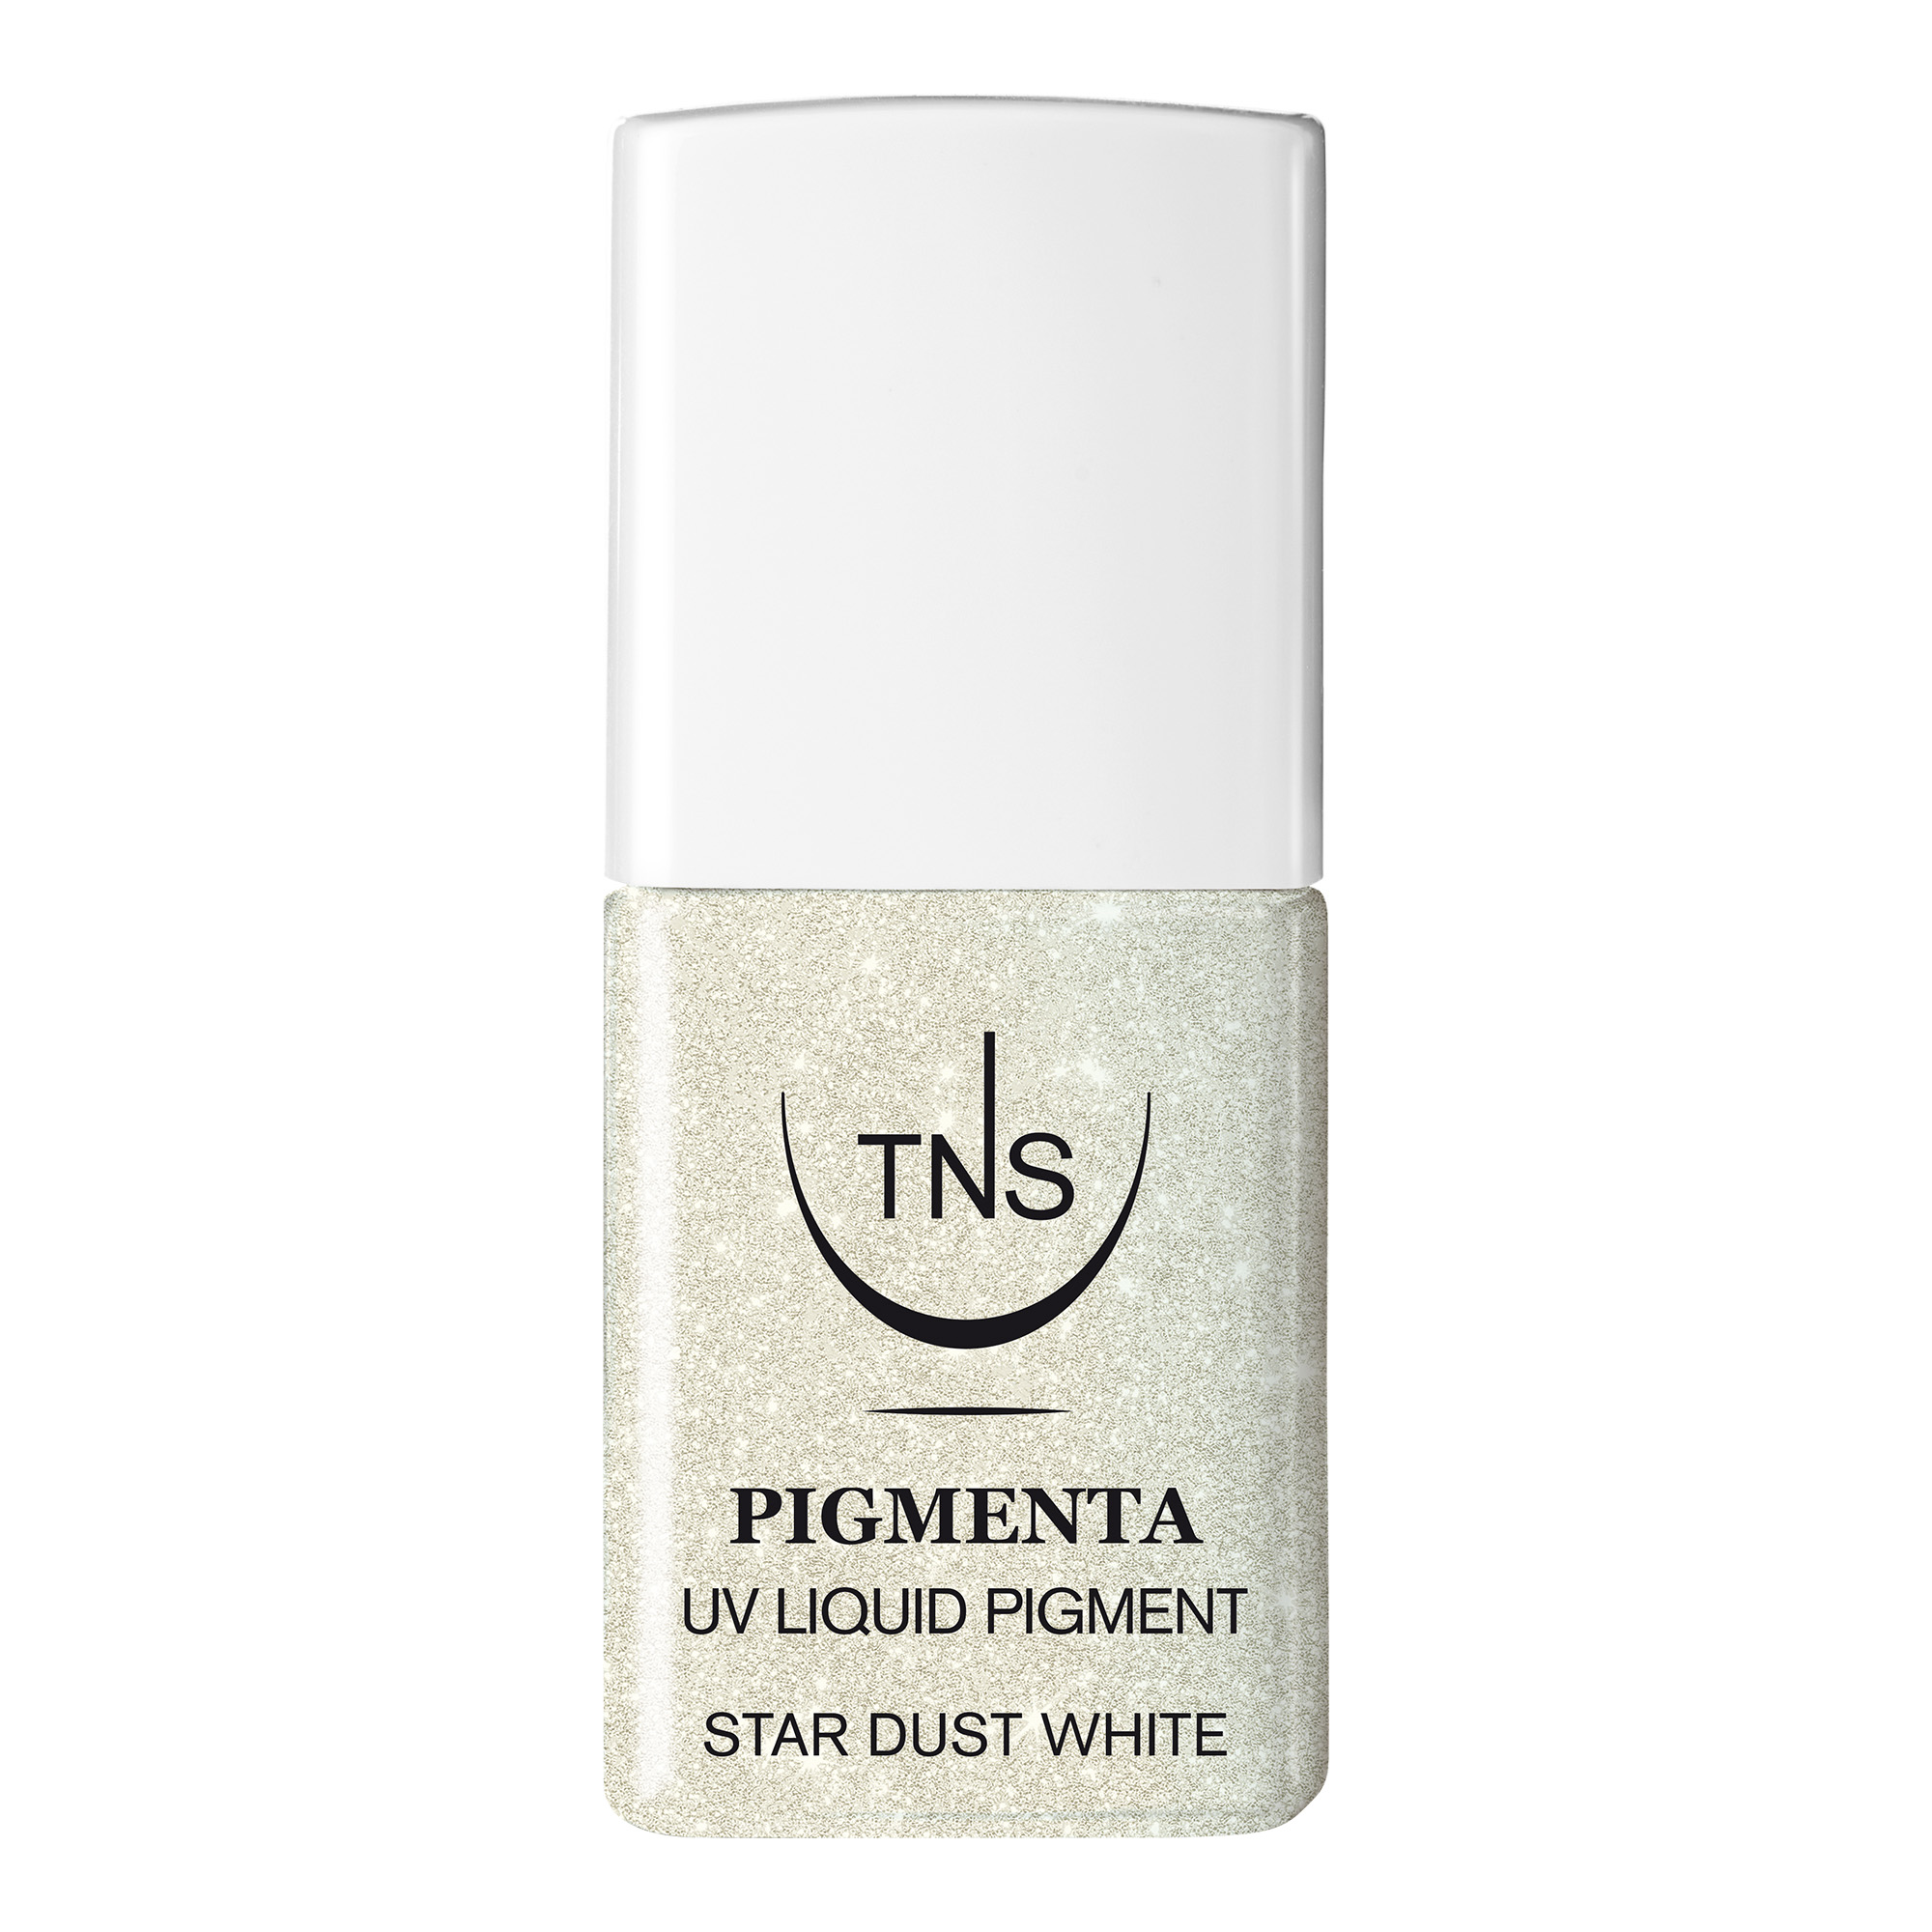 Pigmento Liquido UV Star Dust White bianco glitter 10 ml Pigmenta TNS